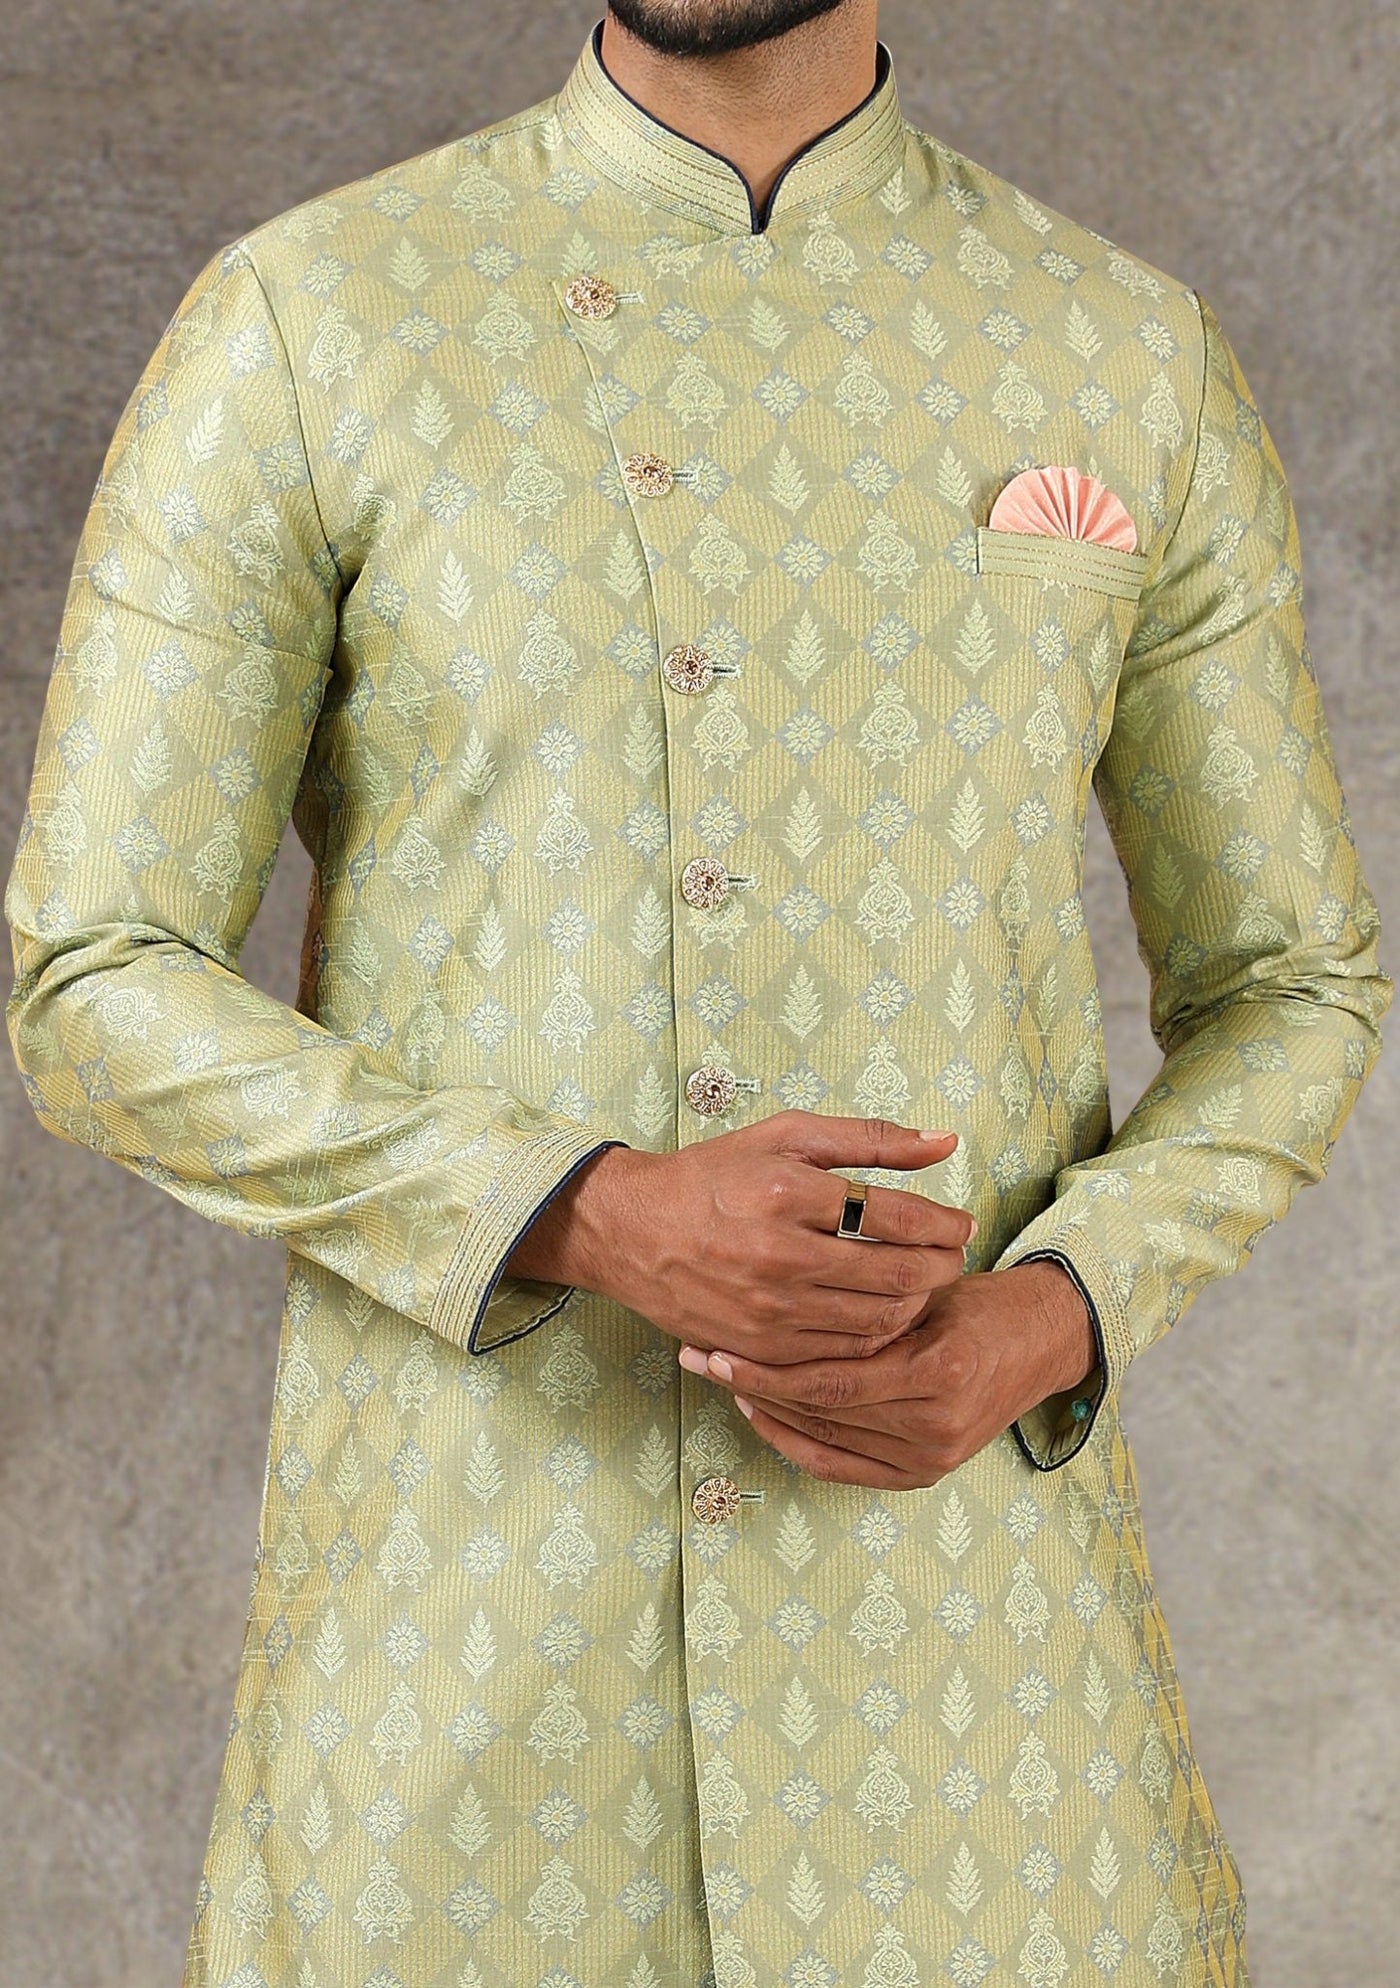 Men's Indo Western Party Wear Sherwani Suit - db20663